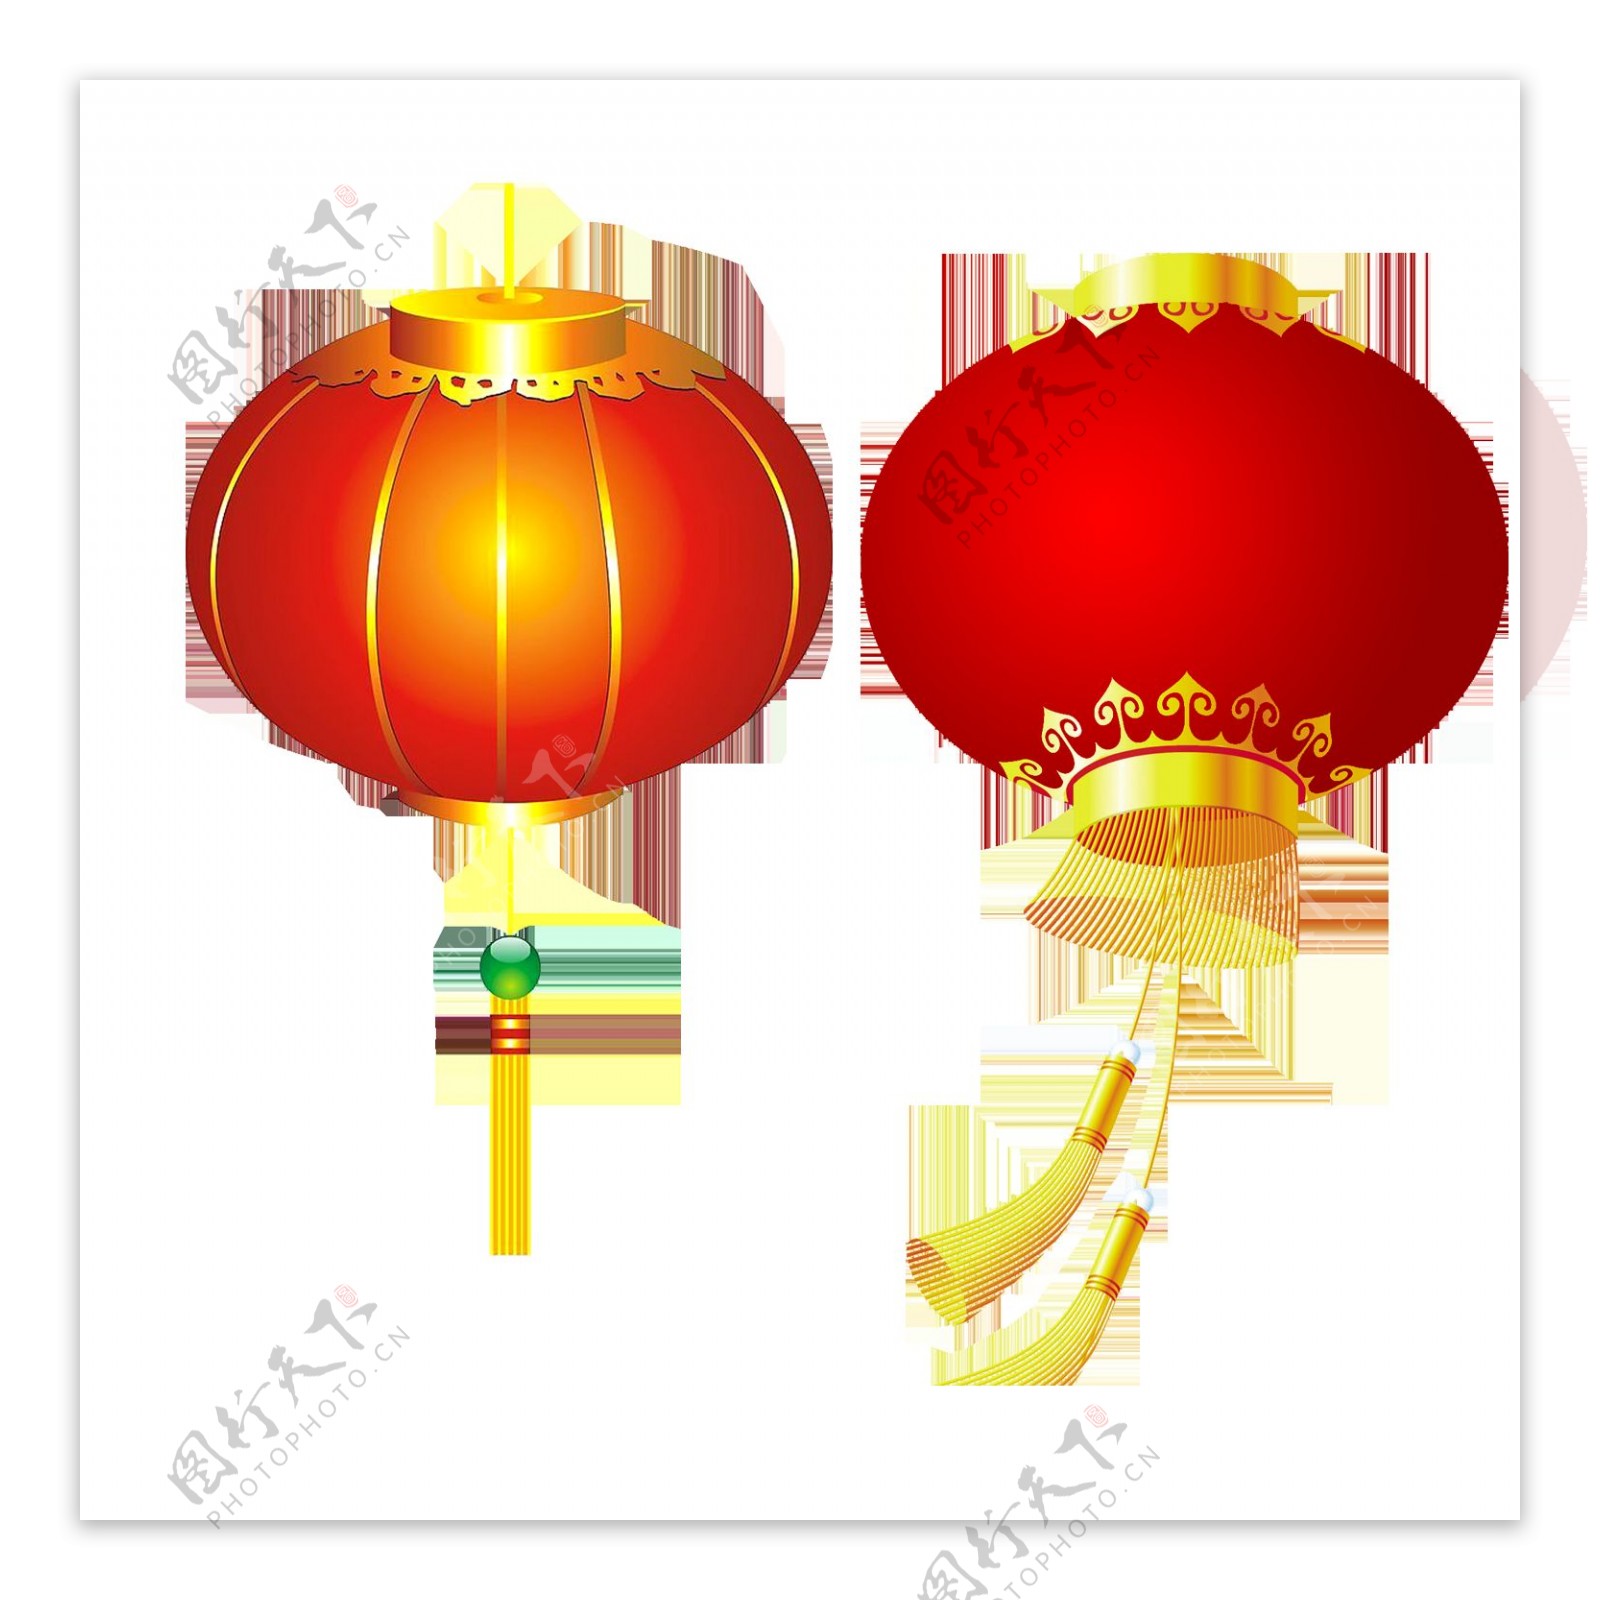 两款中国风大红灯笼元素